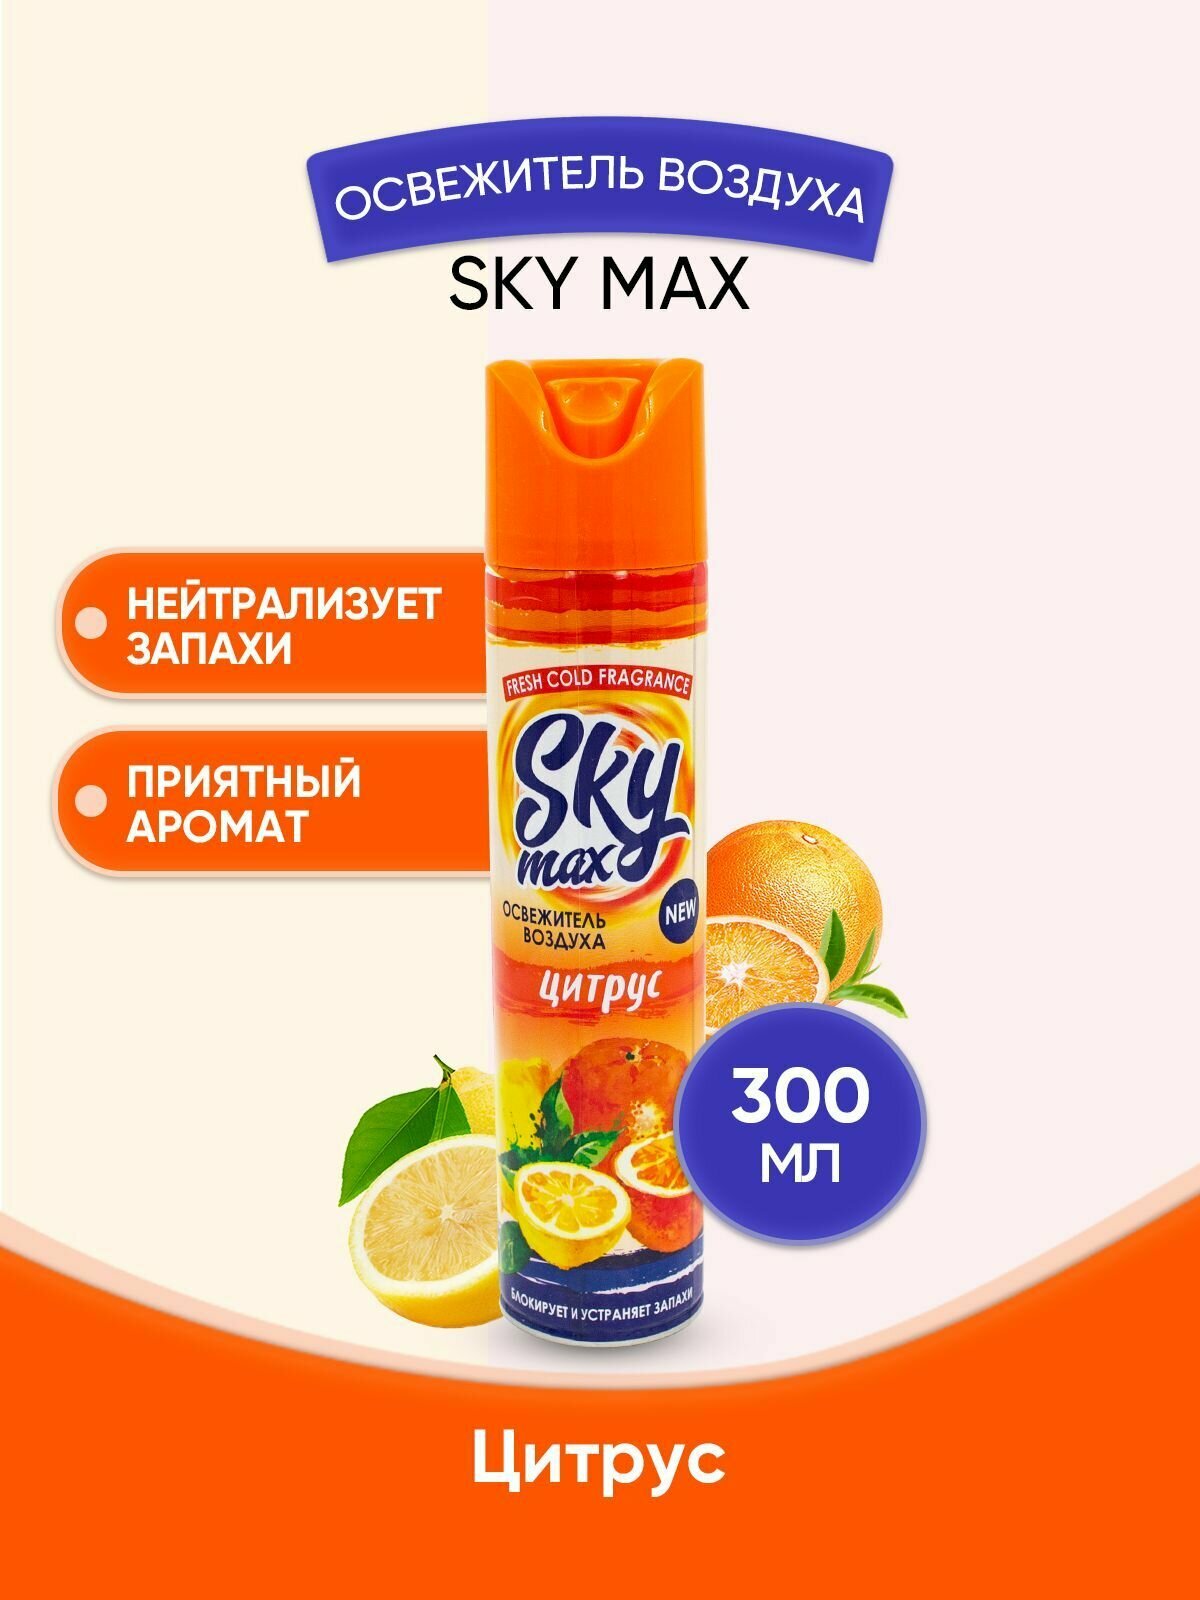 SKY MAX Освежитель воздуха Цитрус 300мл/1шт